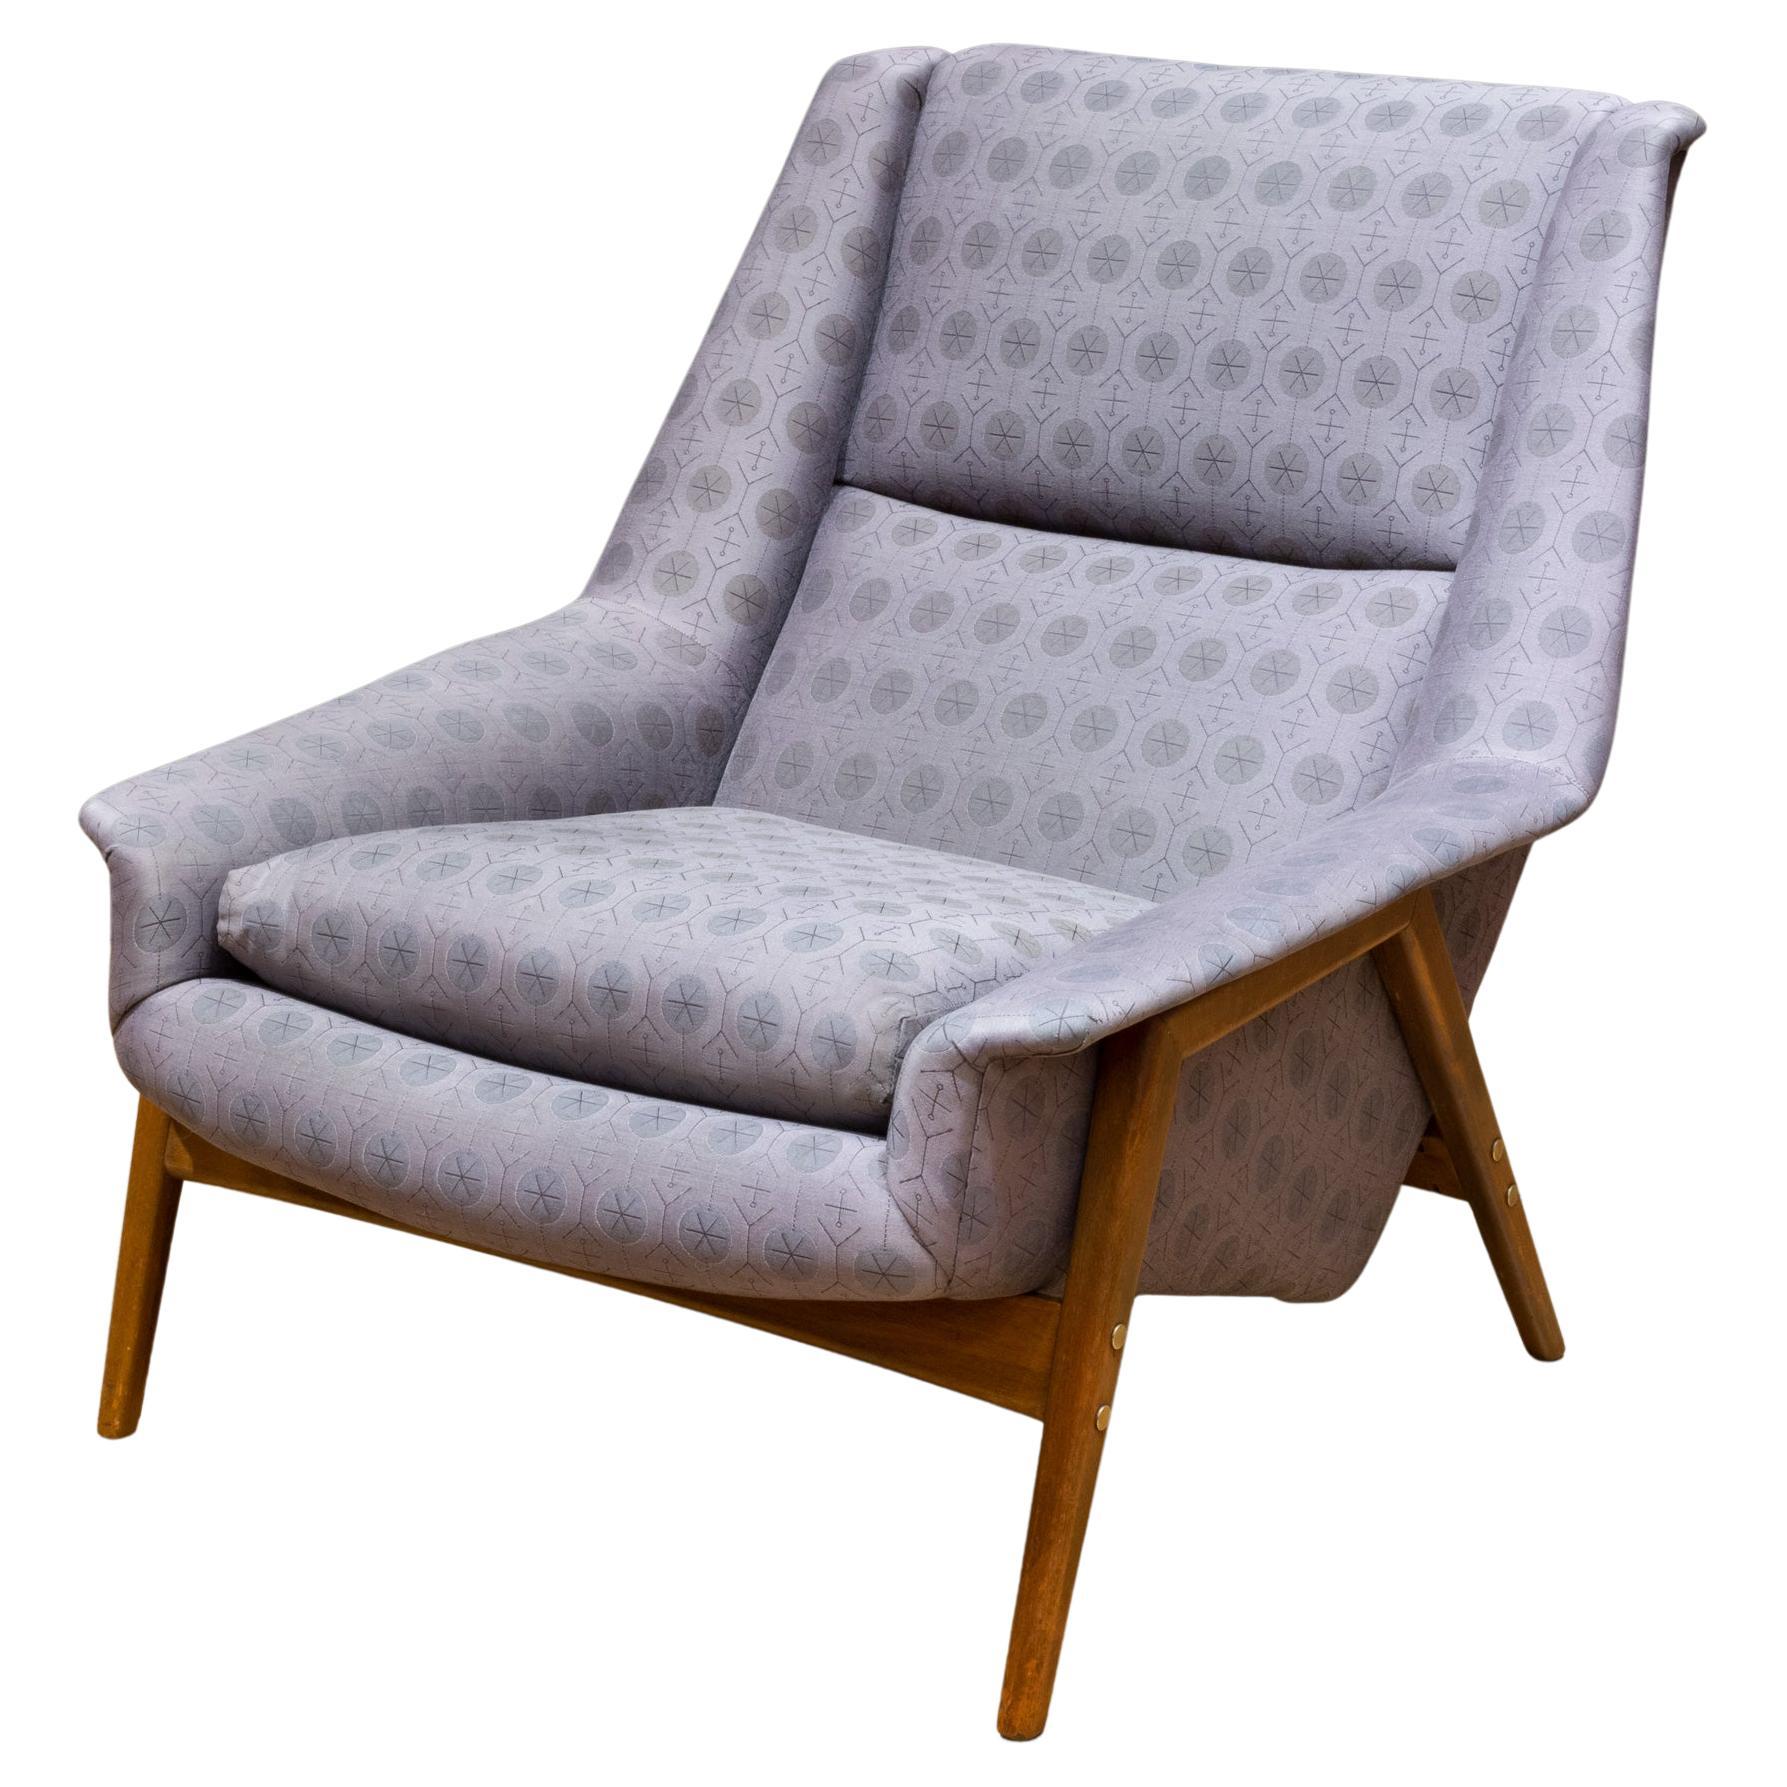 Chaise longue Folke Ohlsson du milieu du siècle dernier c.1950-1960-Reupholsterd Maharam Fabric